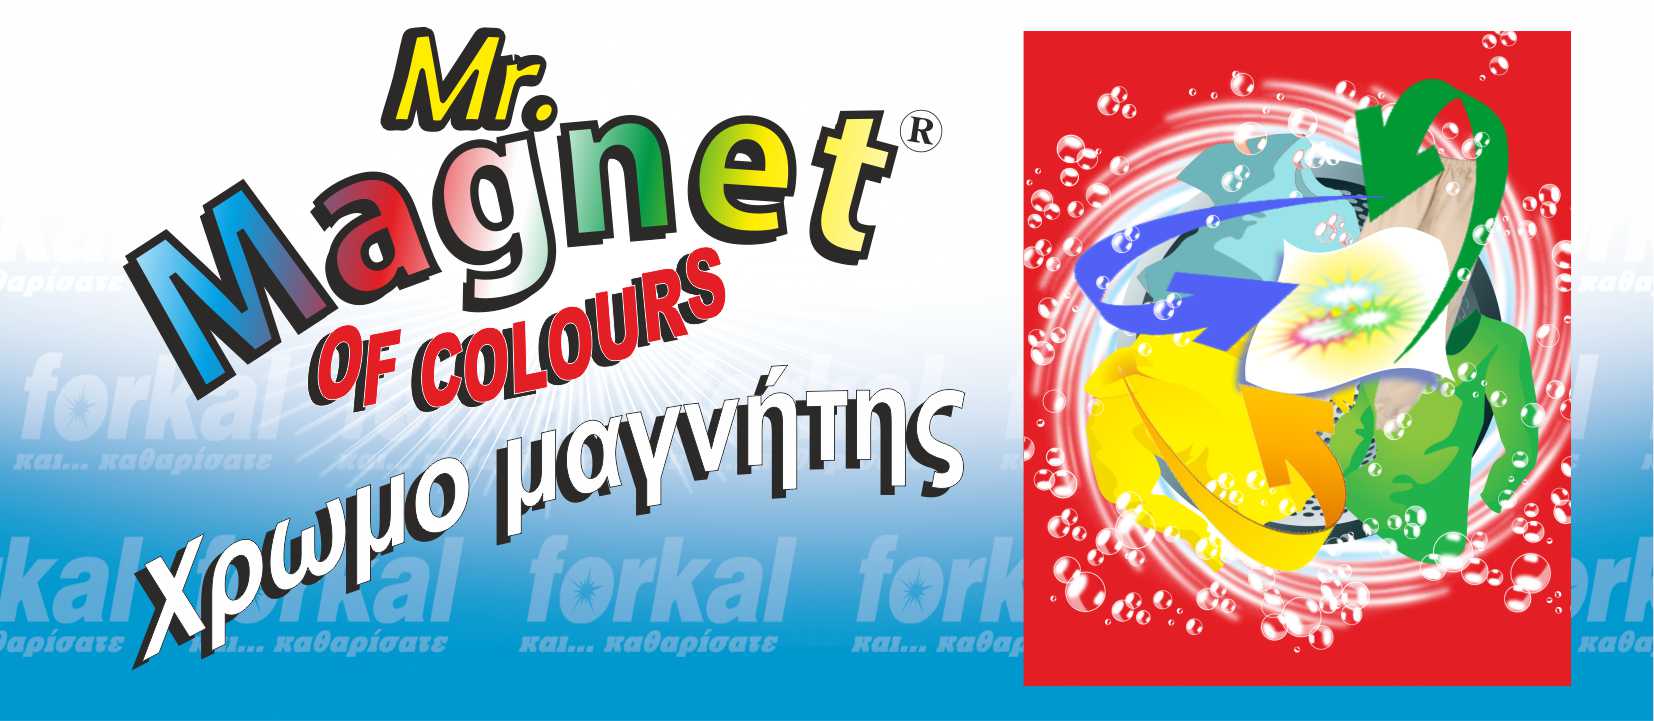 Χρωμομαγνήτης- Mr Magnet - Mr Magnet MR. MAGNET of colours. Χρωμομαγνήτης  forkal ,  forkal Χρωμο μαγνήτης . %>